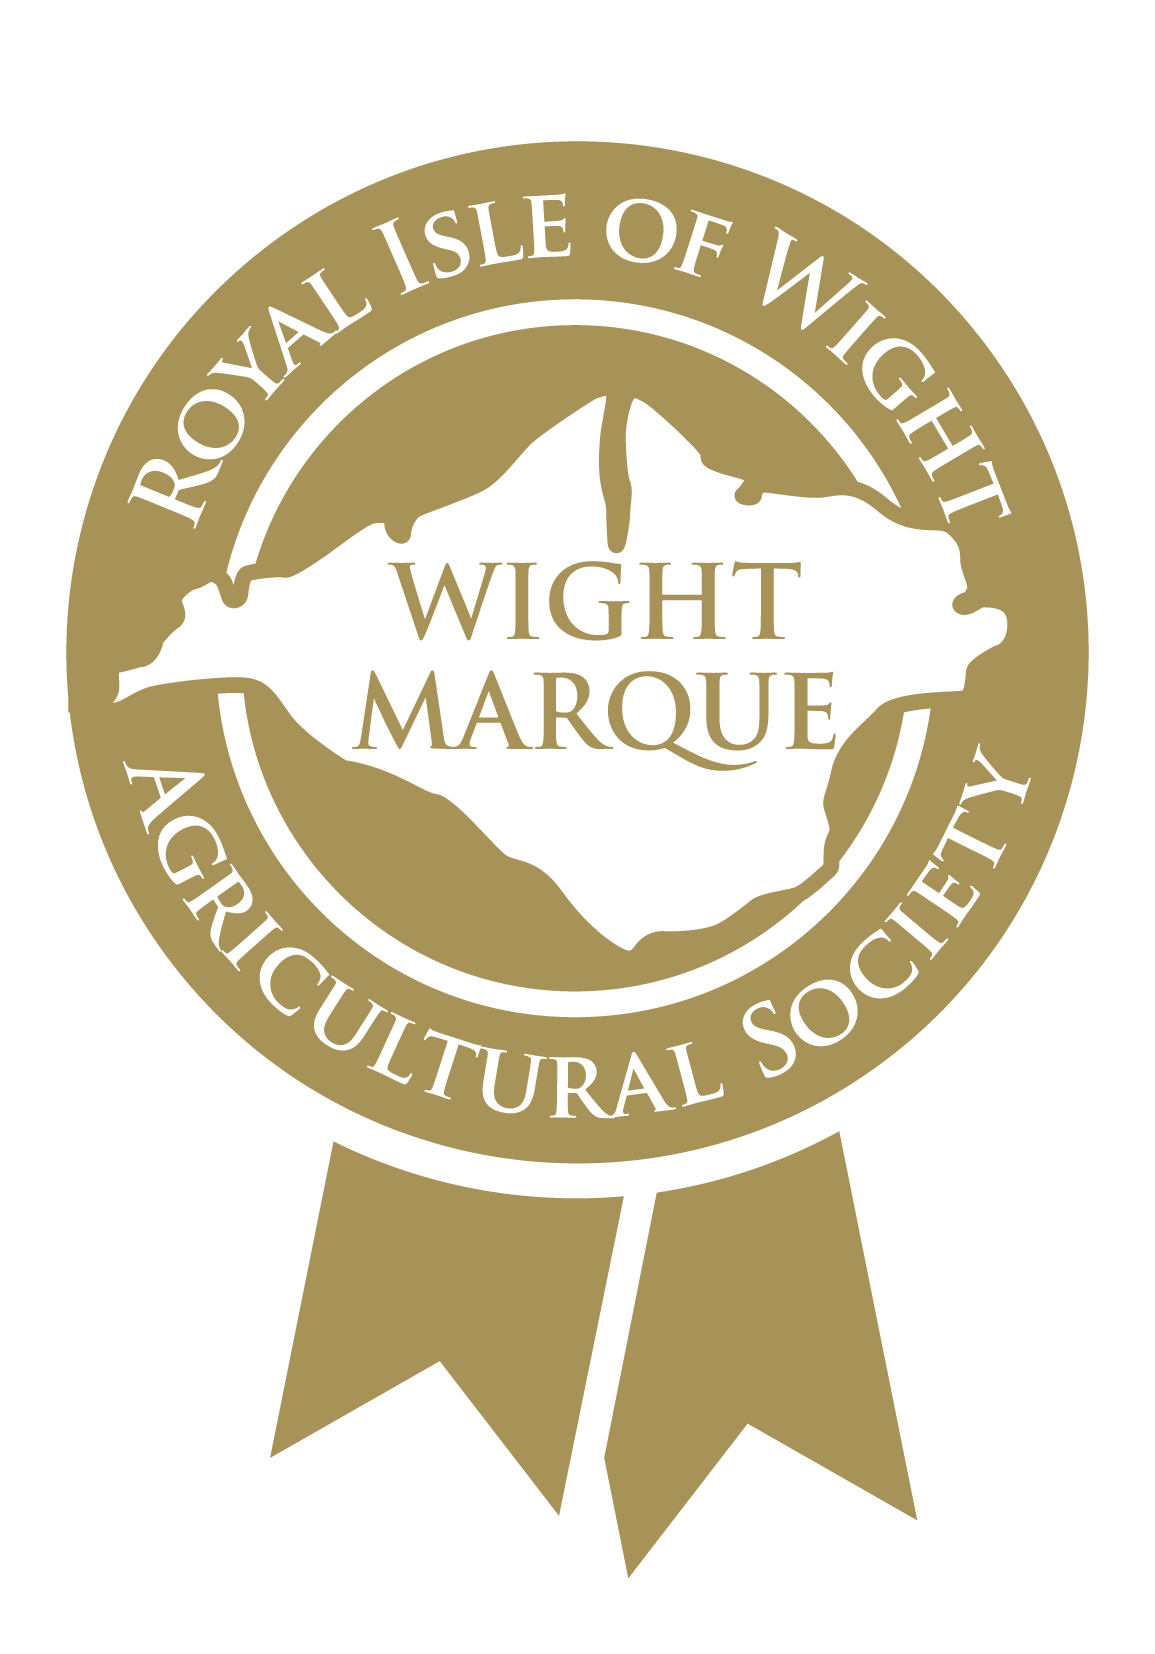 Wight Marque logo